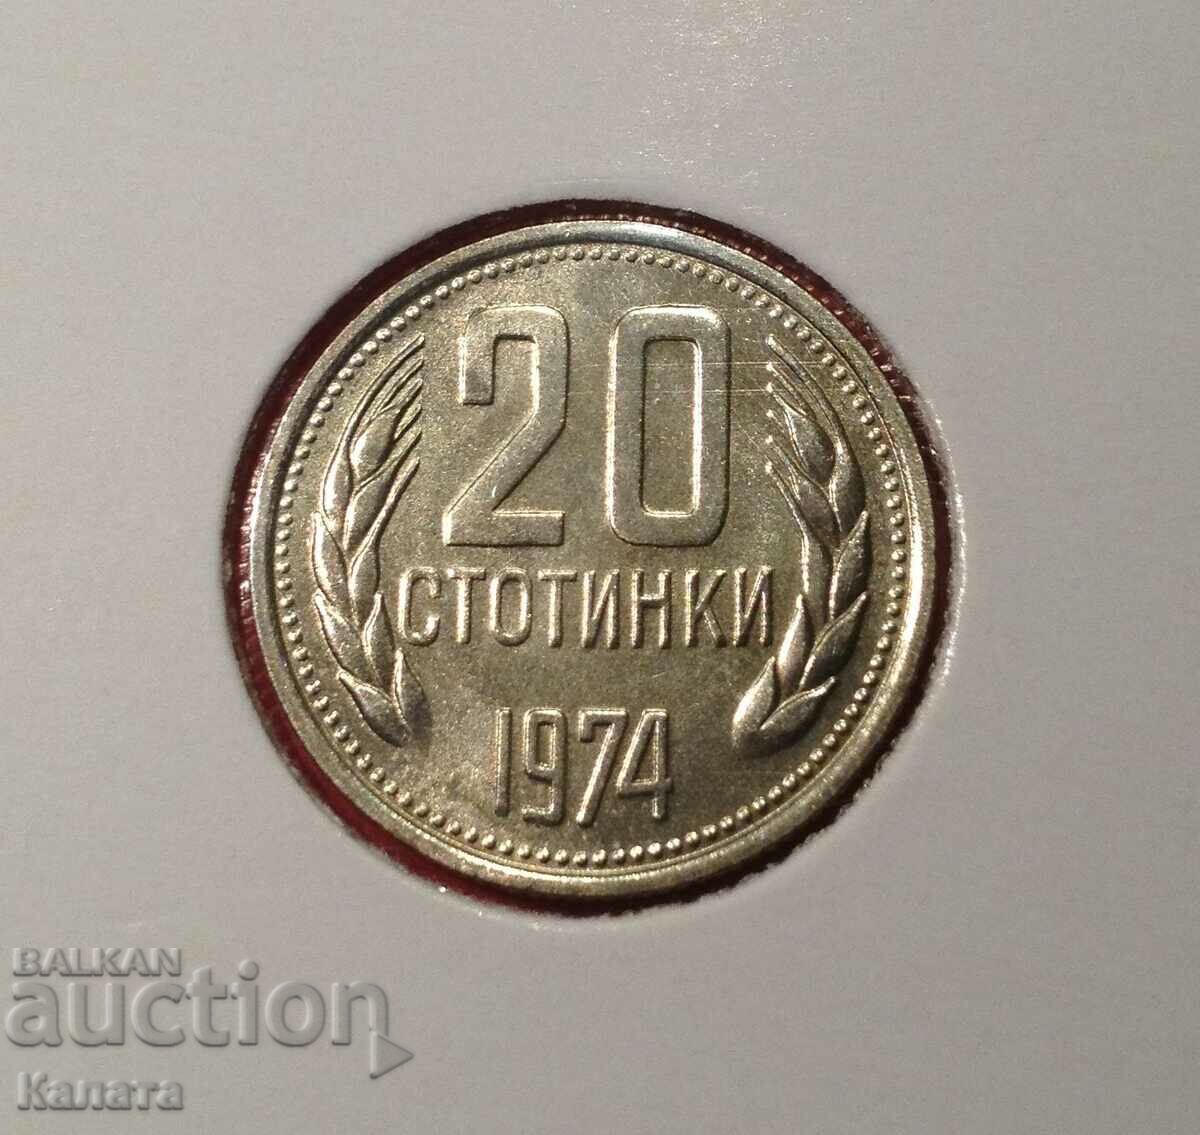 20 σεντς 1974